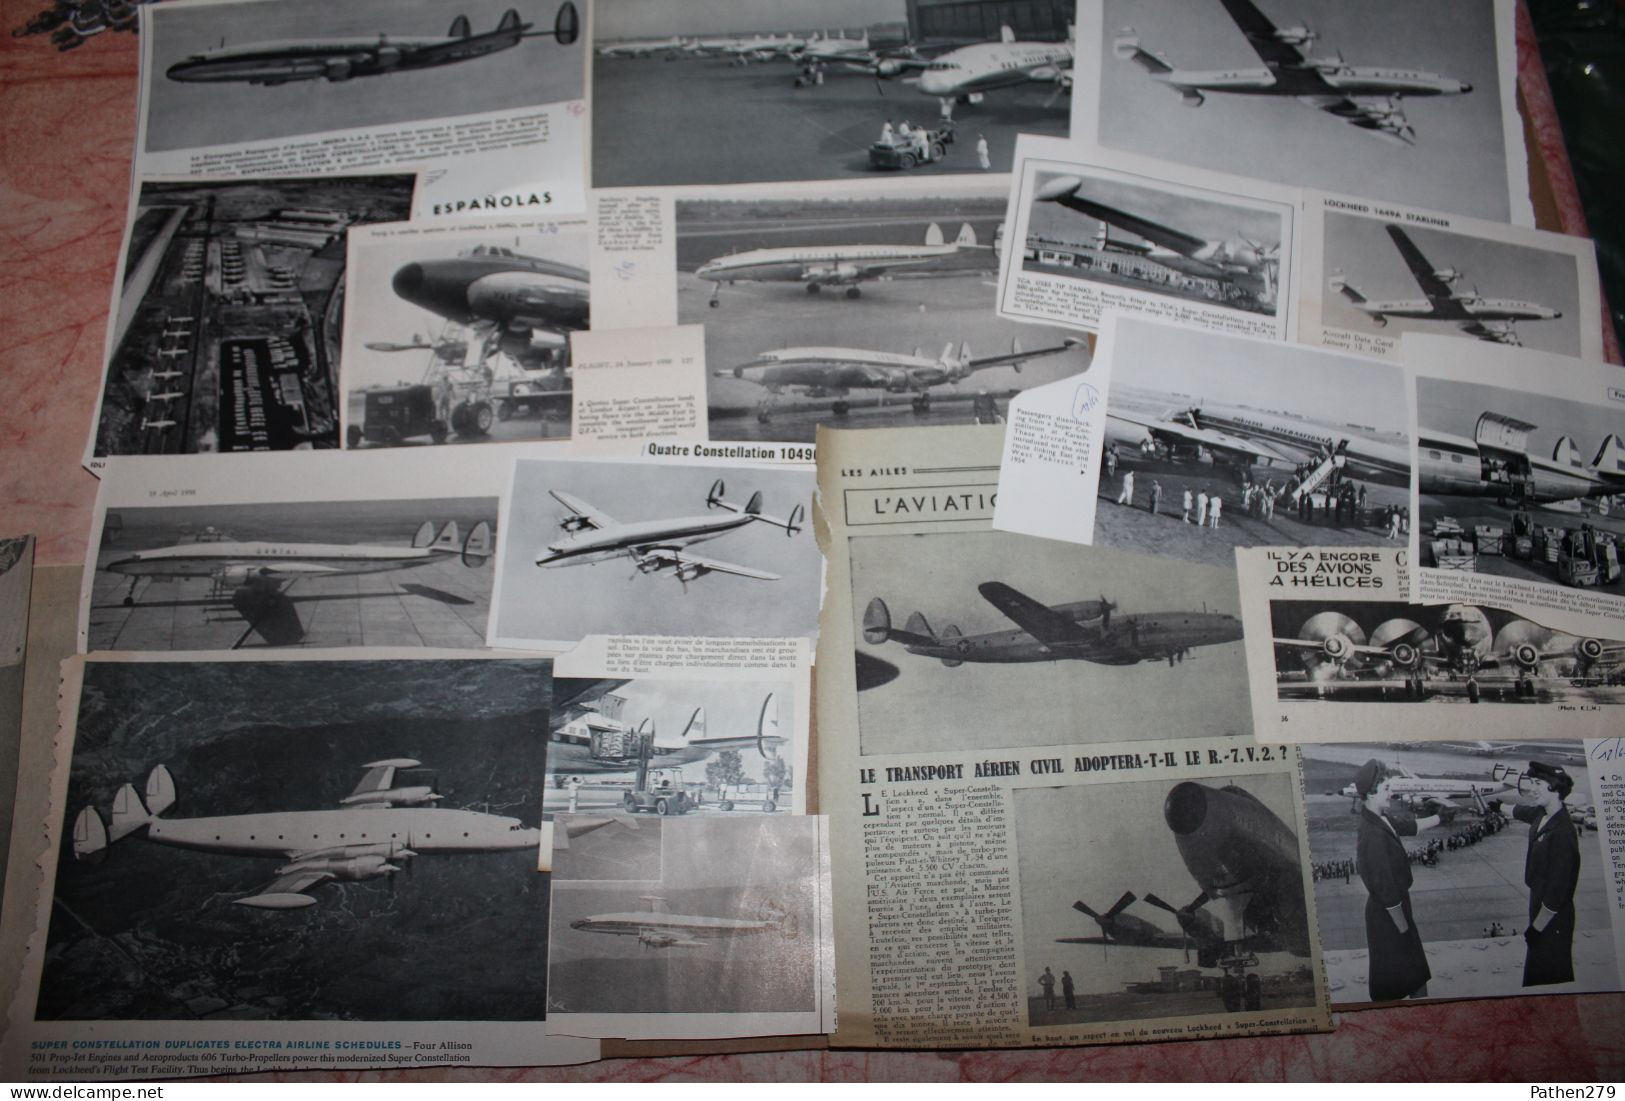 Lot de 362g d'anciennes coupures de presse et photo de l'aéronef américain Lockheed "Super Constellation"